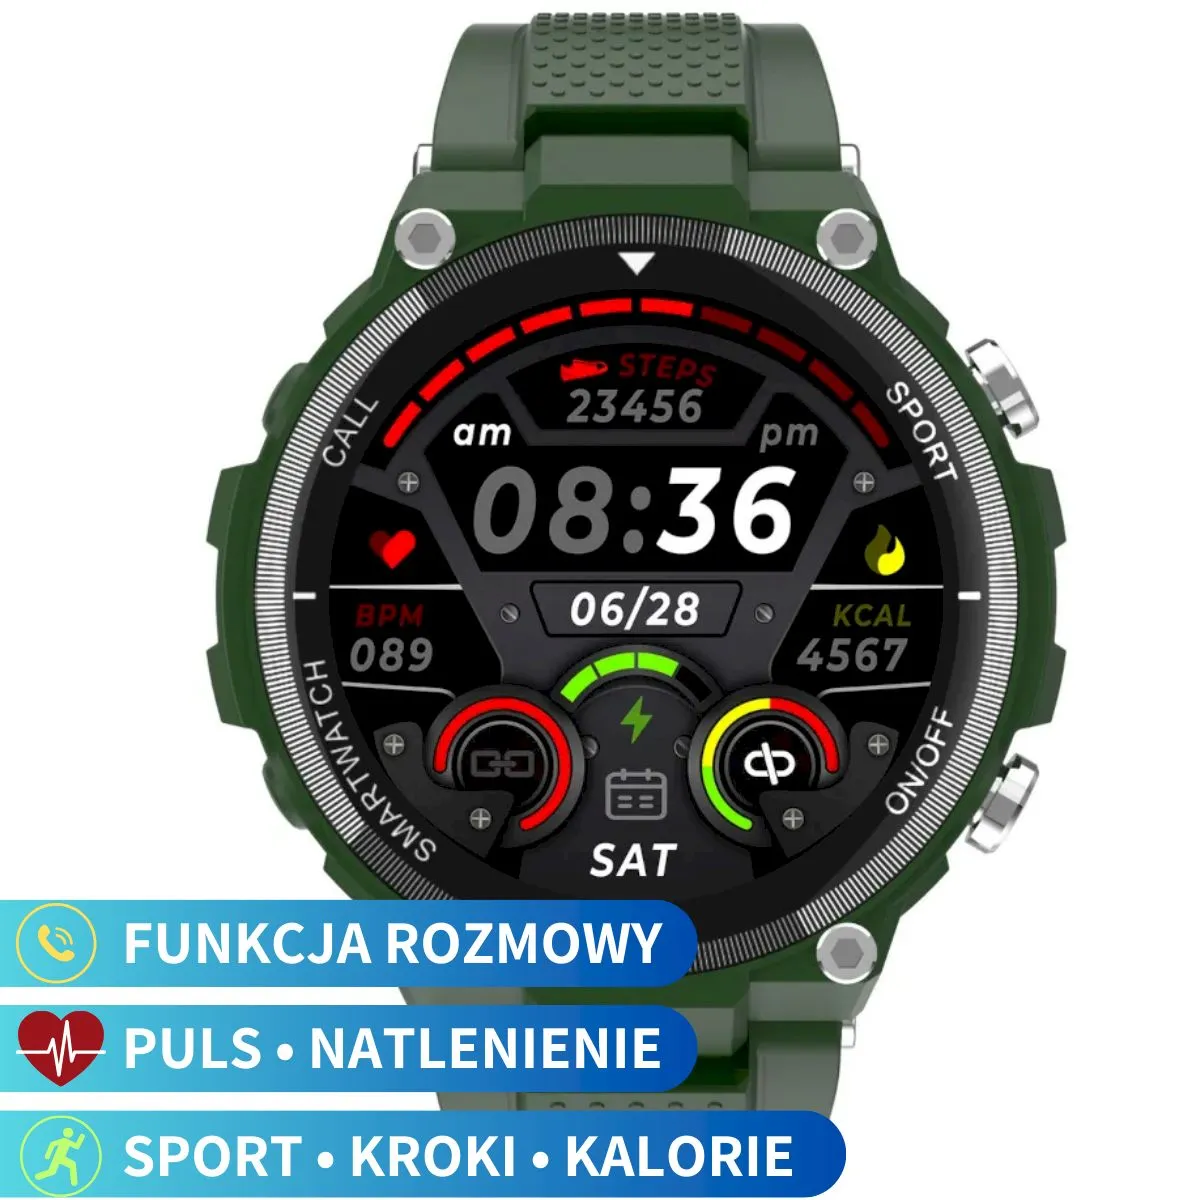 Zdjęcia - Smartwatche Pacific Smartwatch z funkcją rozmowy zielony  34-02 Sport Kroki Kalorie Pul 